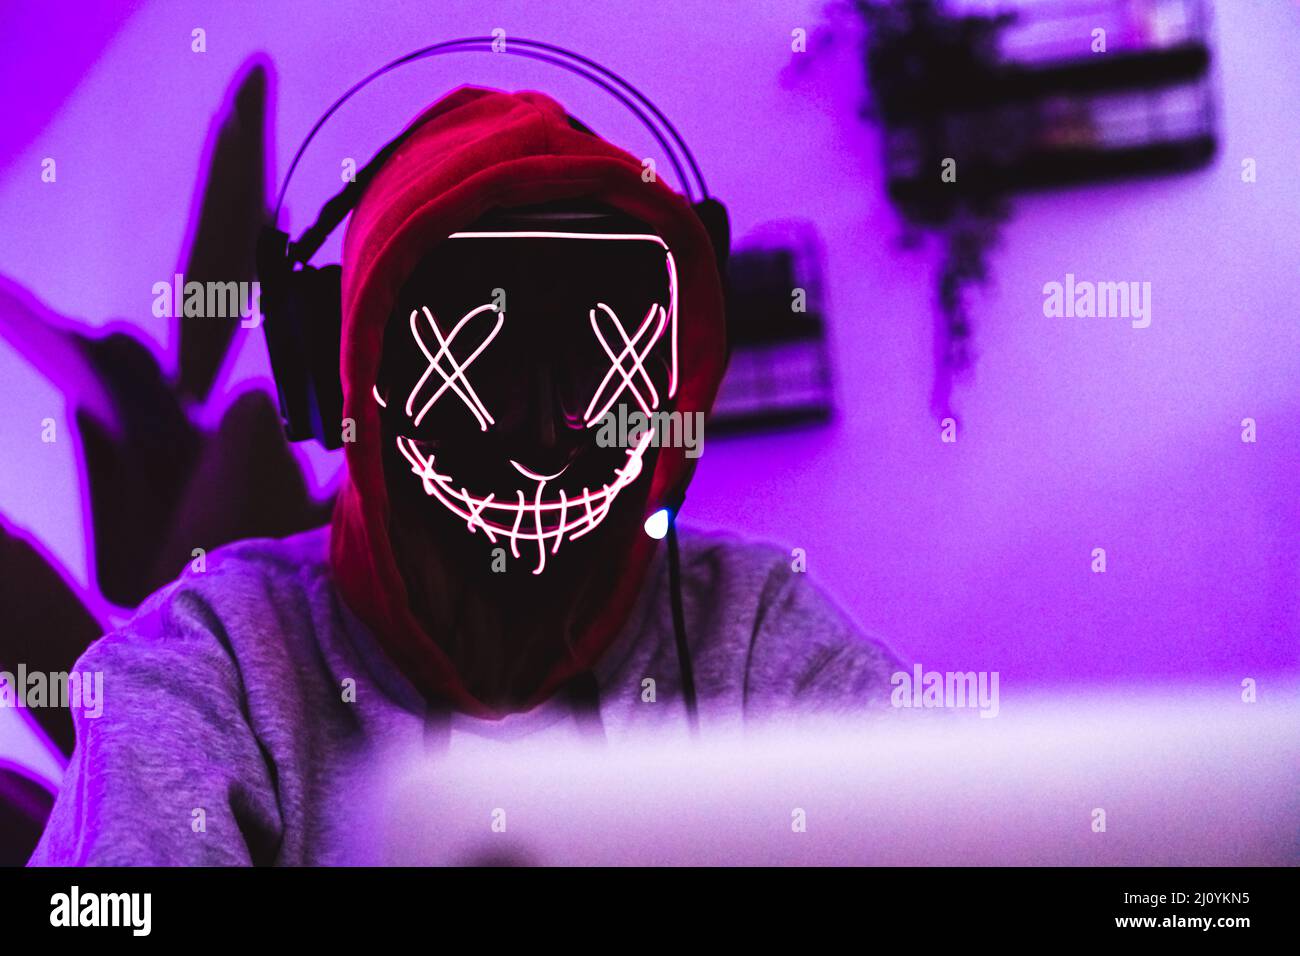 Cyberspace-Schutzkonzept. Hacker tragen eine unheimliche Maske, Kopfhörer und einen Hoodie. Magentafarbener Hintergrund. Hochwertige Fotos Stockfoto